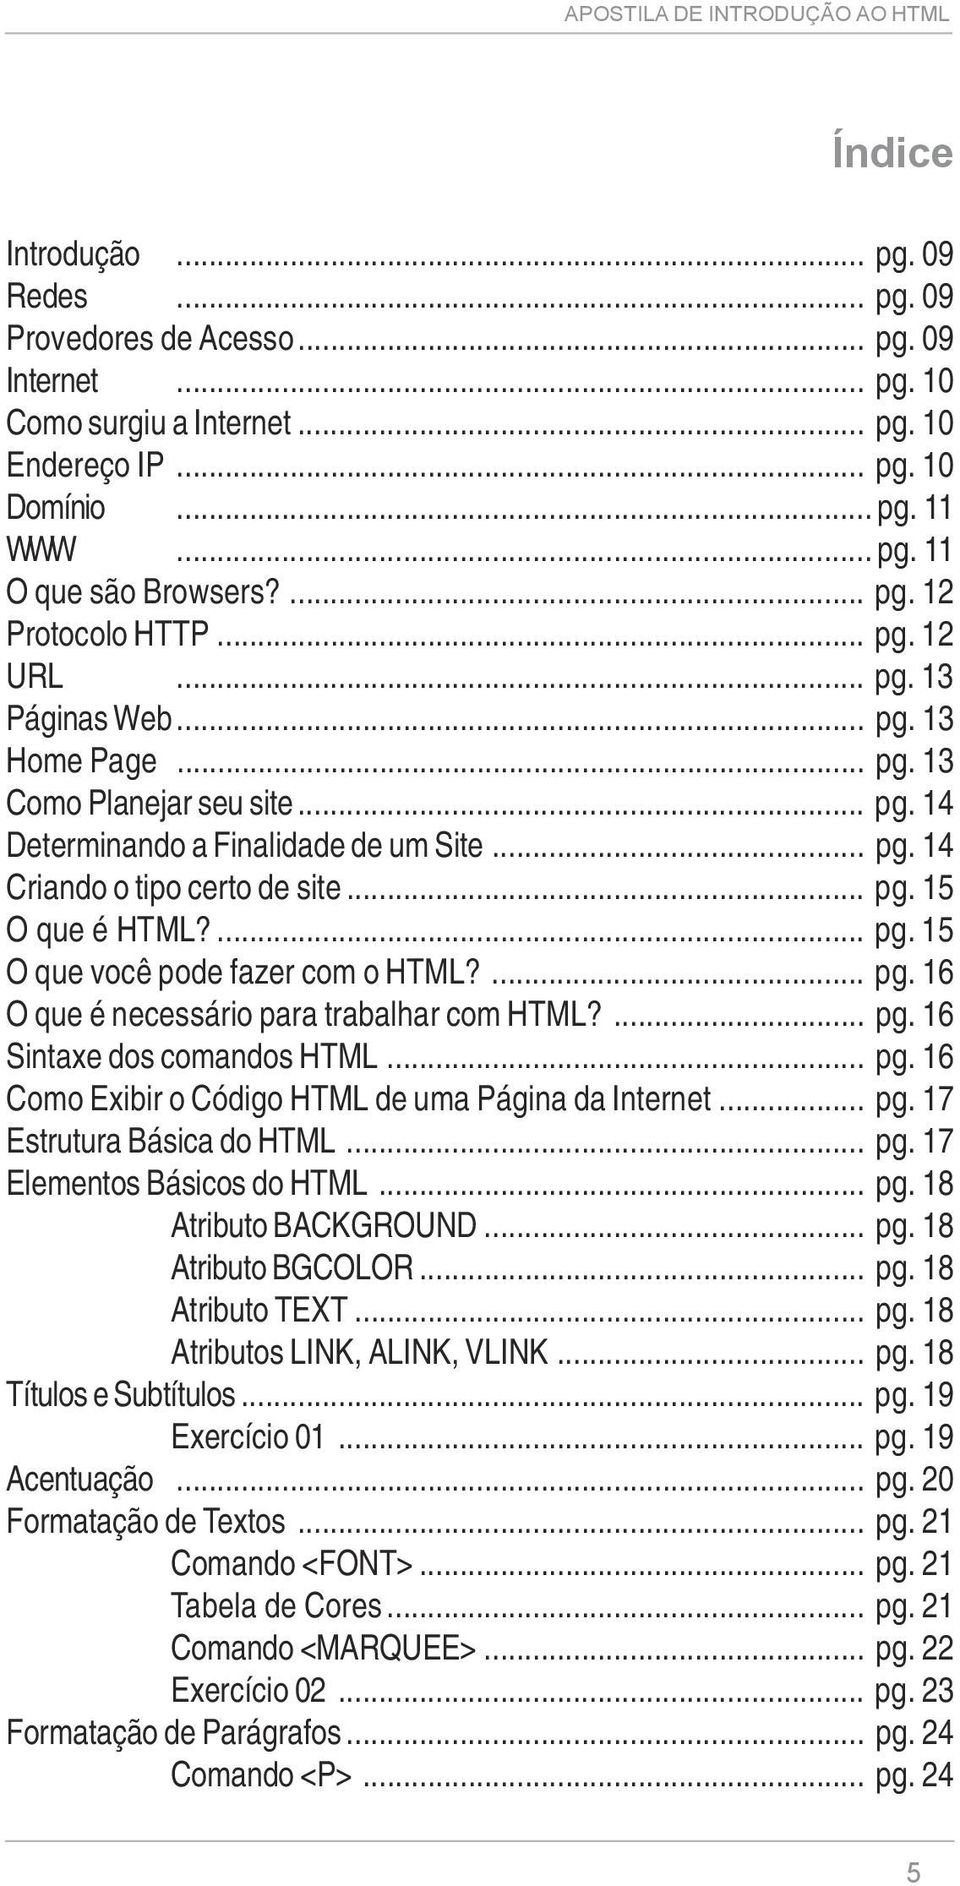 .. pg. 15 O que é HTML?... pg. 15 O que você pode fazer com o HTML?... pg. 16 O que é necessário para trabalhar com HTML?... pg. 16 Sintaxe dos comandos HTML... pg. 16 Como Exibir o Código HTML de uma Página da Internet.